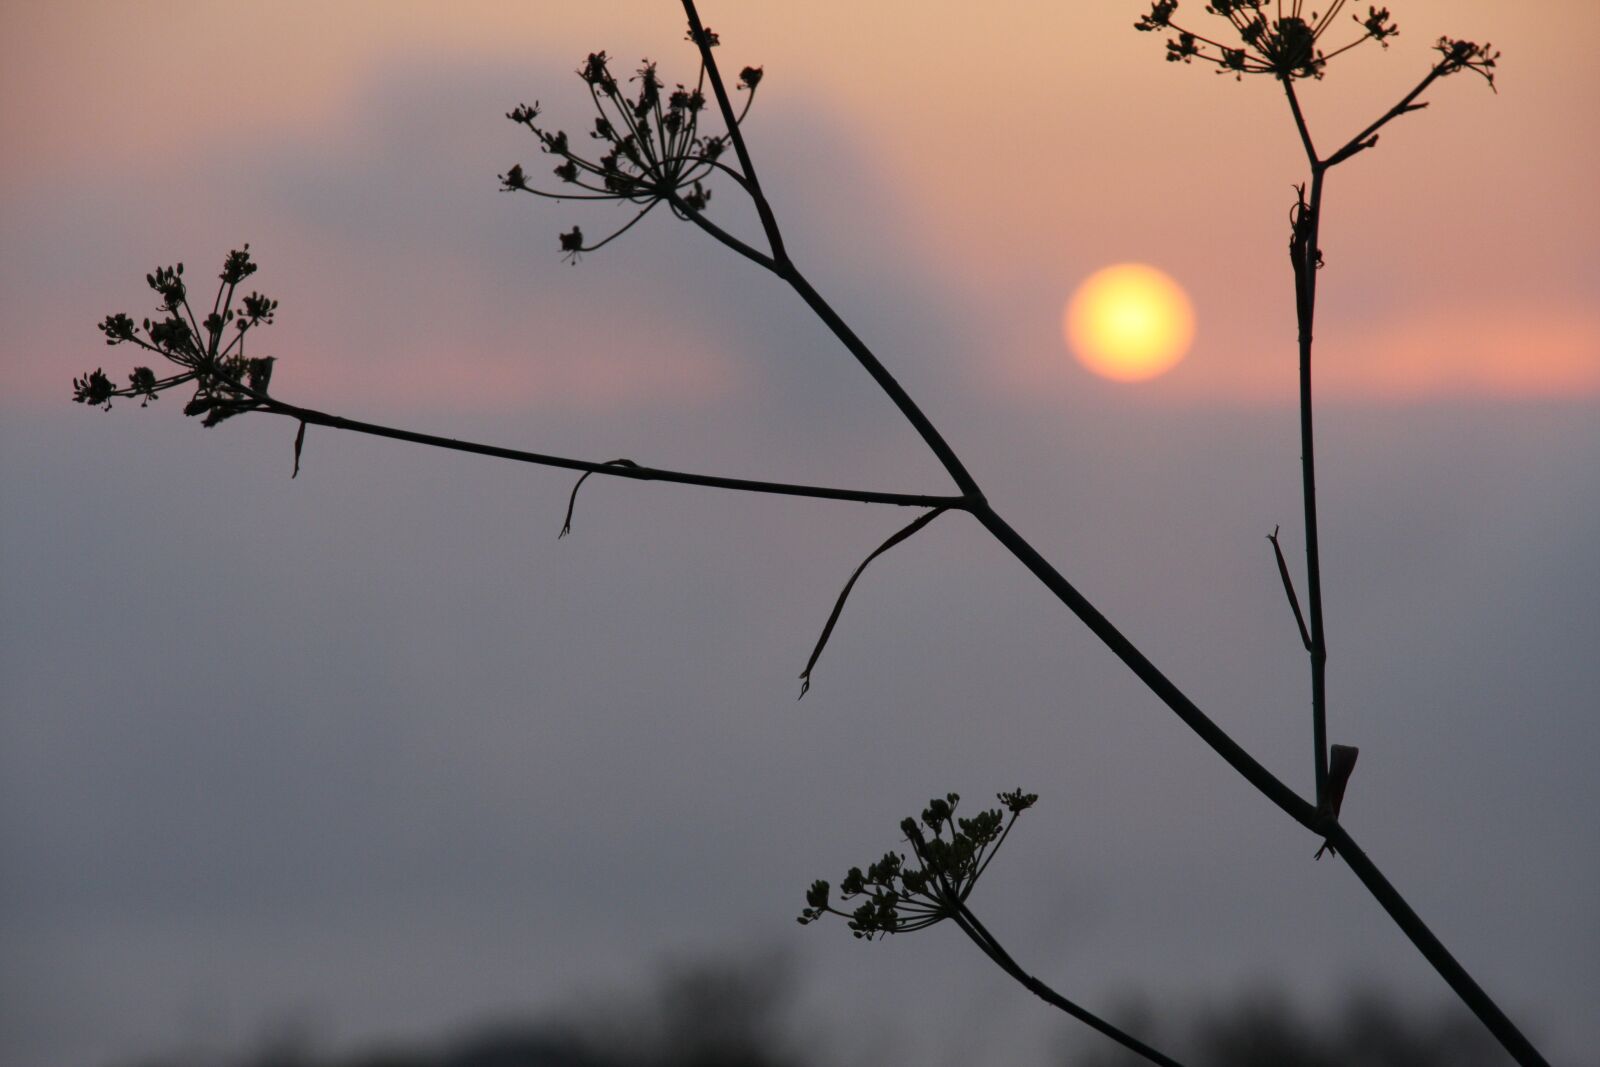 Canon EOS 40D sample photo. Sunset, fennel, sun photography